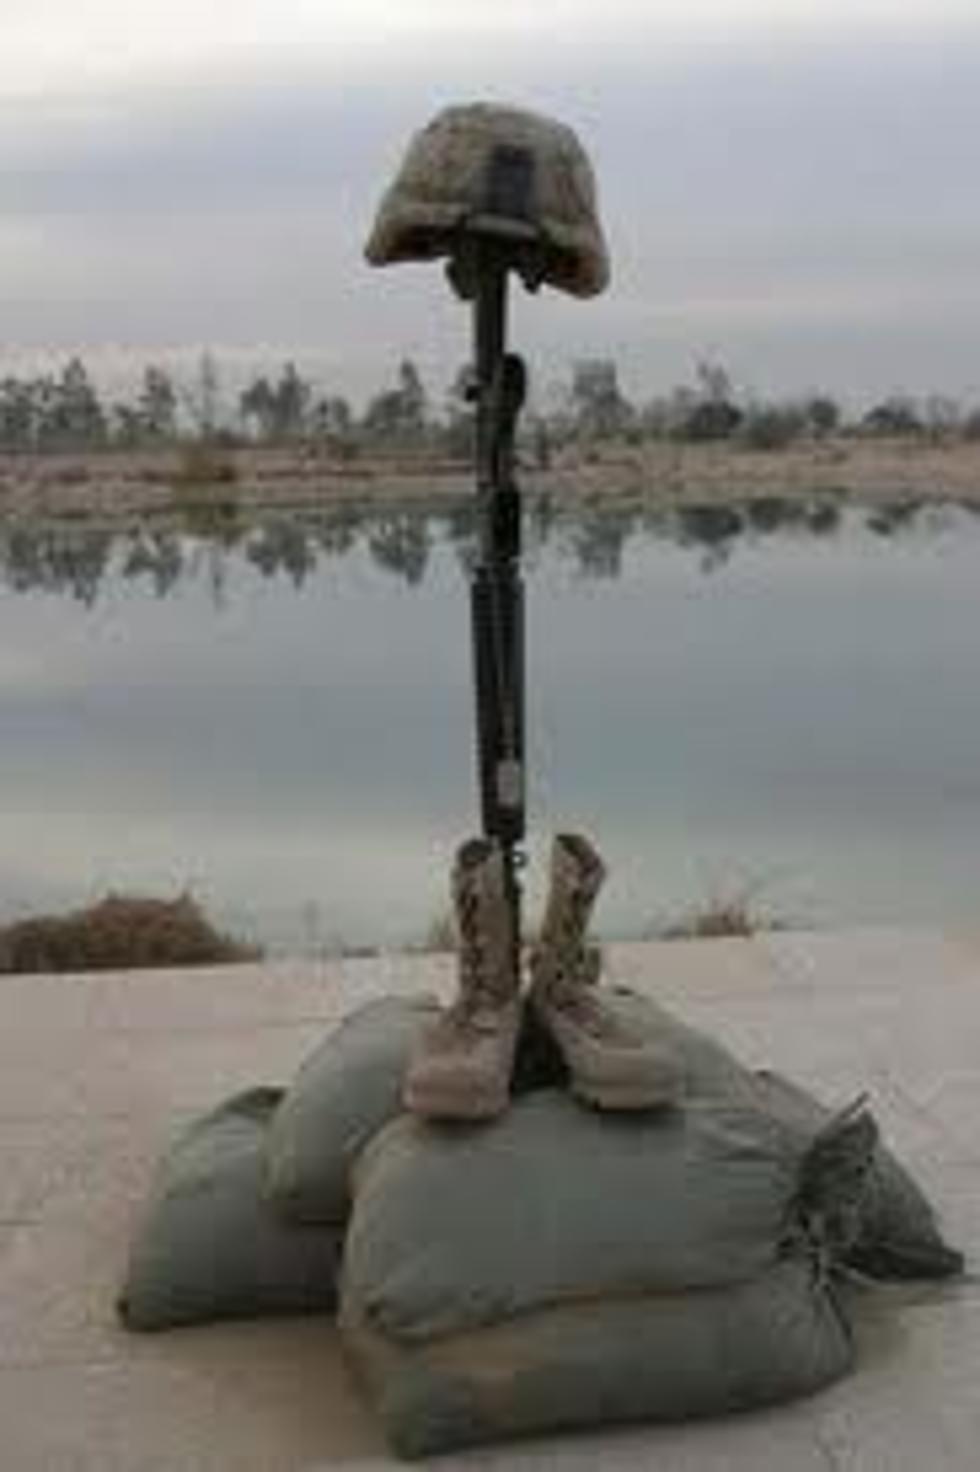 Idaho Soldier Dies In Afghanistan